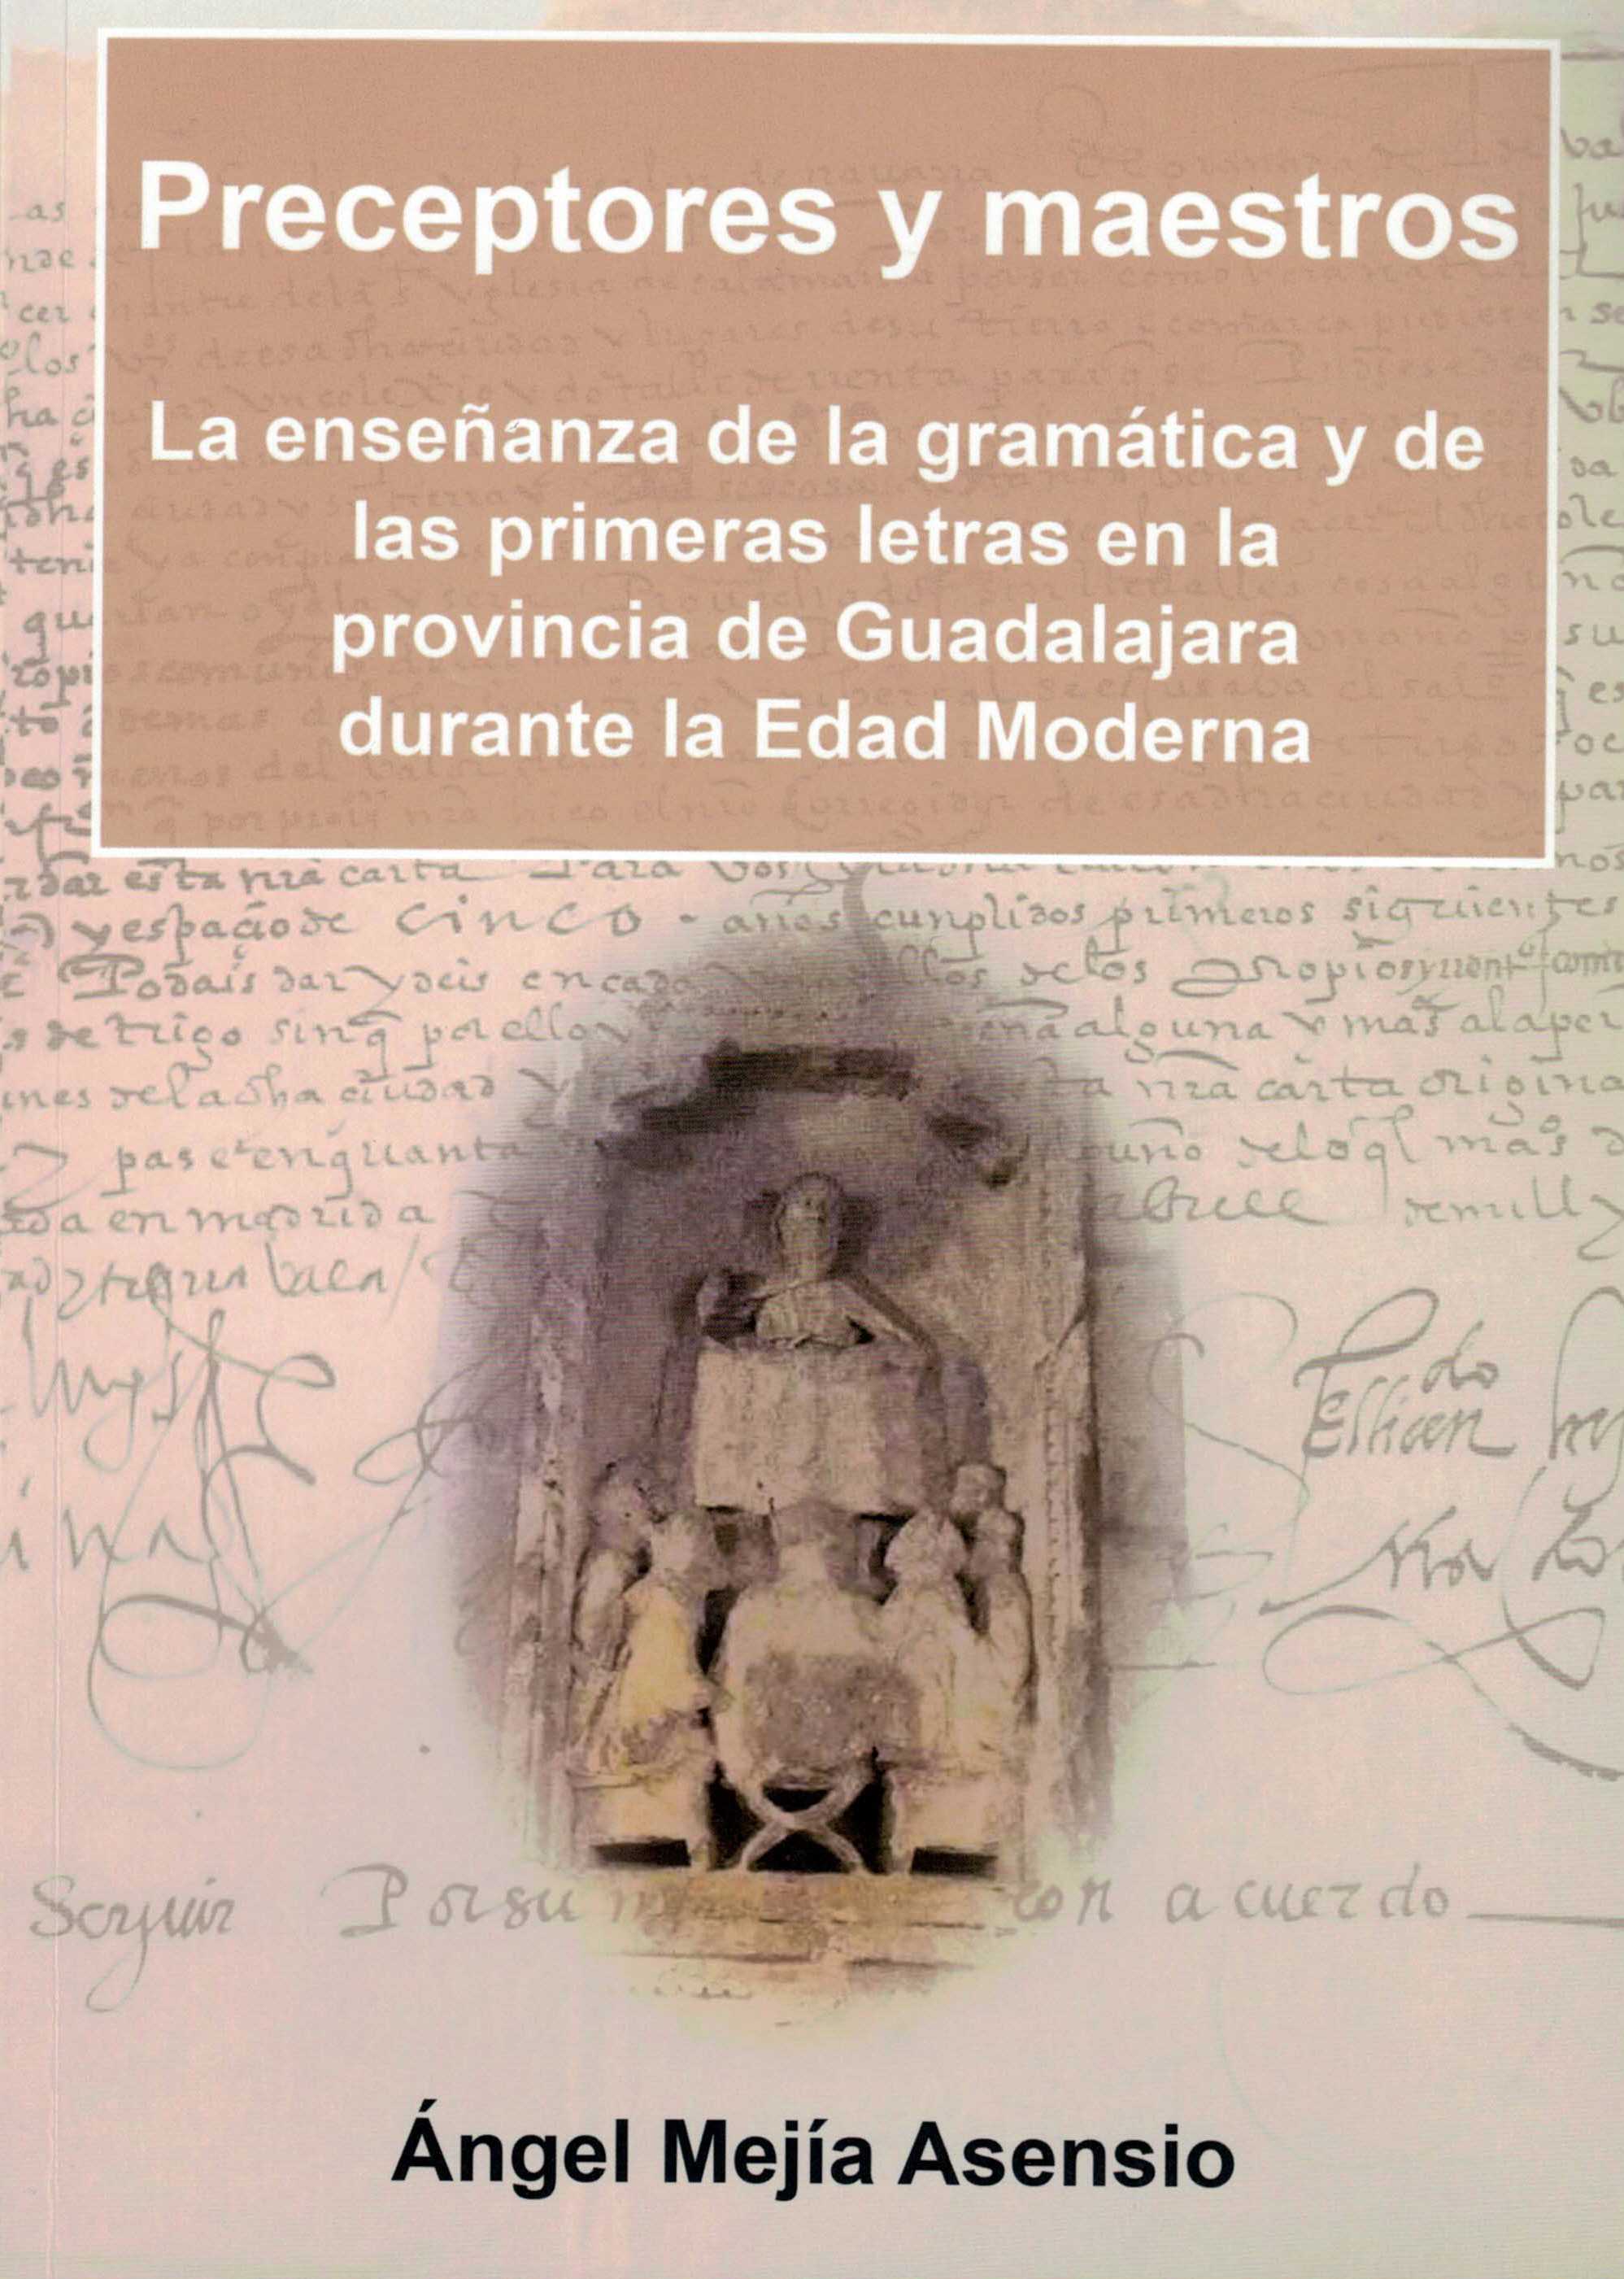 Preceptores y maestros, La enseñanza de la gramática y de las primeras letras en la provincia de Guadalajara durante la Edad Moderna